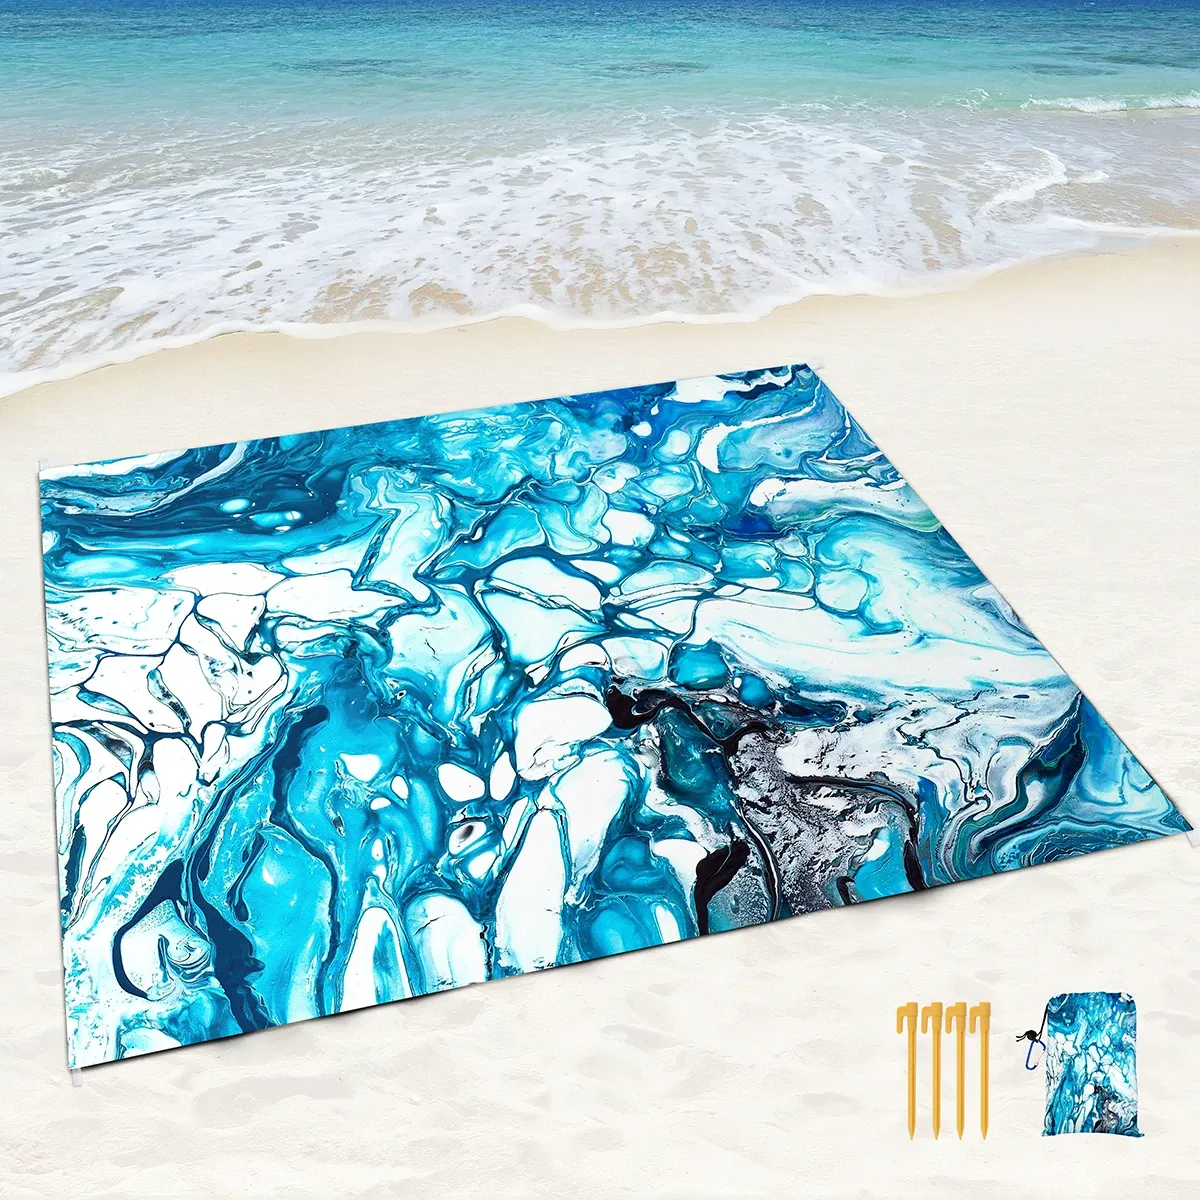 Maty Bolit na plażę Wodoodporny piasek, niebieski marmurowy czarny piknik z kieszeniami piaskowymi i stawkami, marlingowa podkładka zewnętrzna na nadmorskie